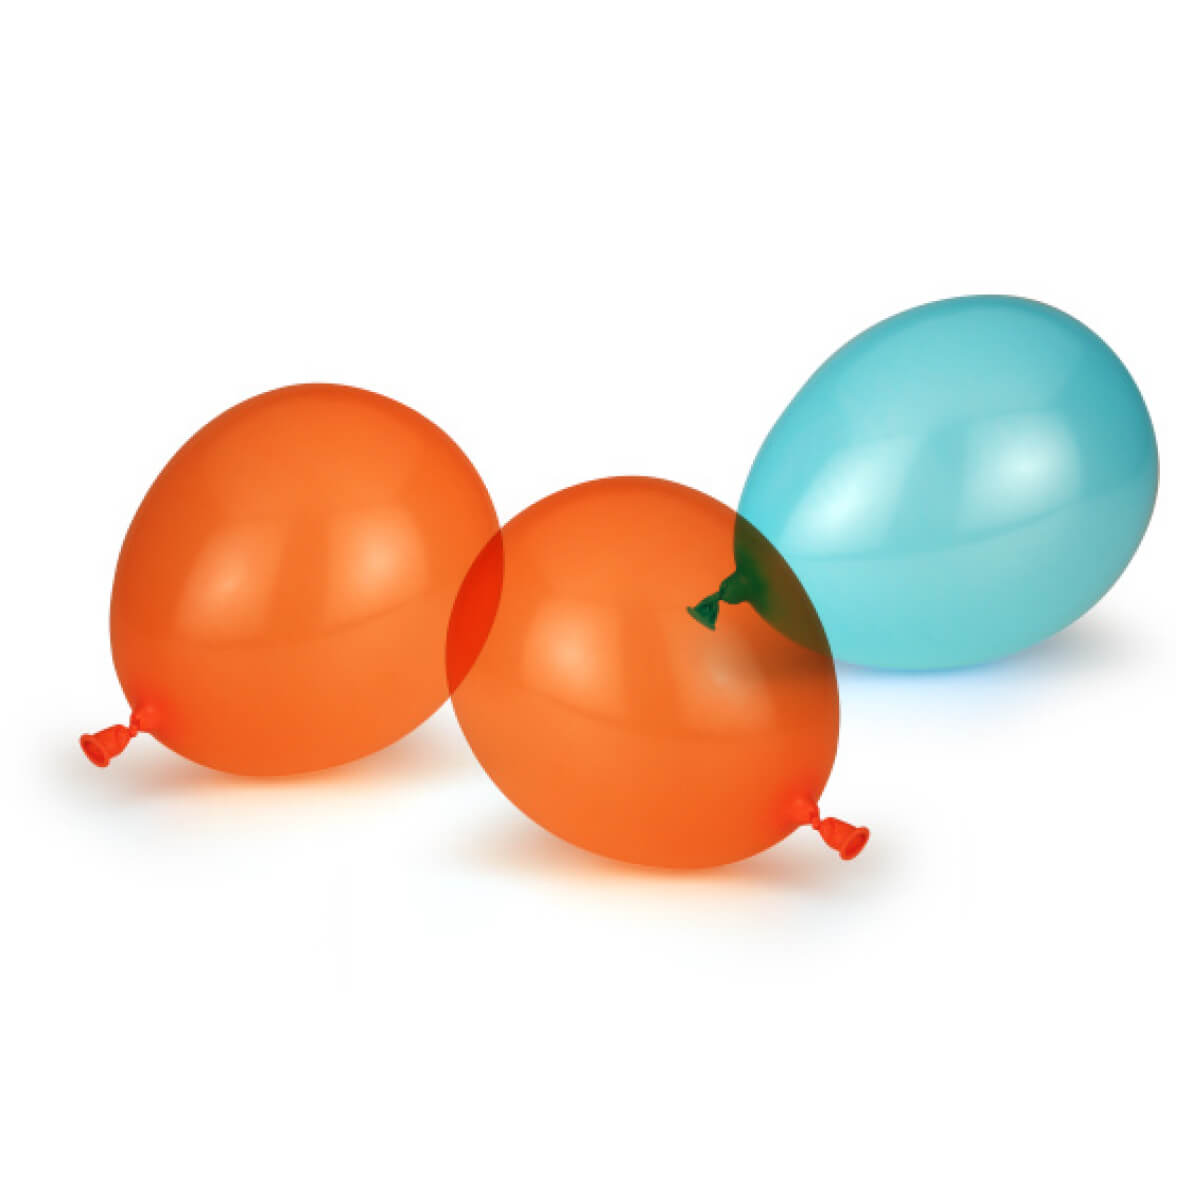 Luftballons rund ø 250 mm für Wachsschalen – Pack à 20 Stk